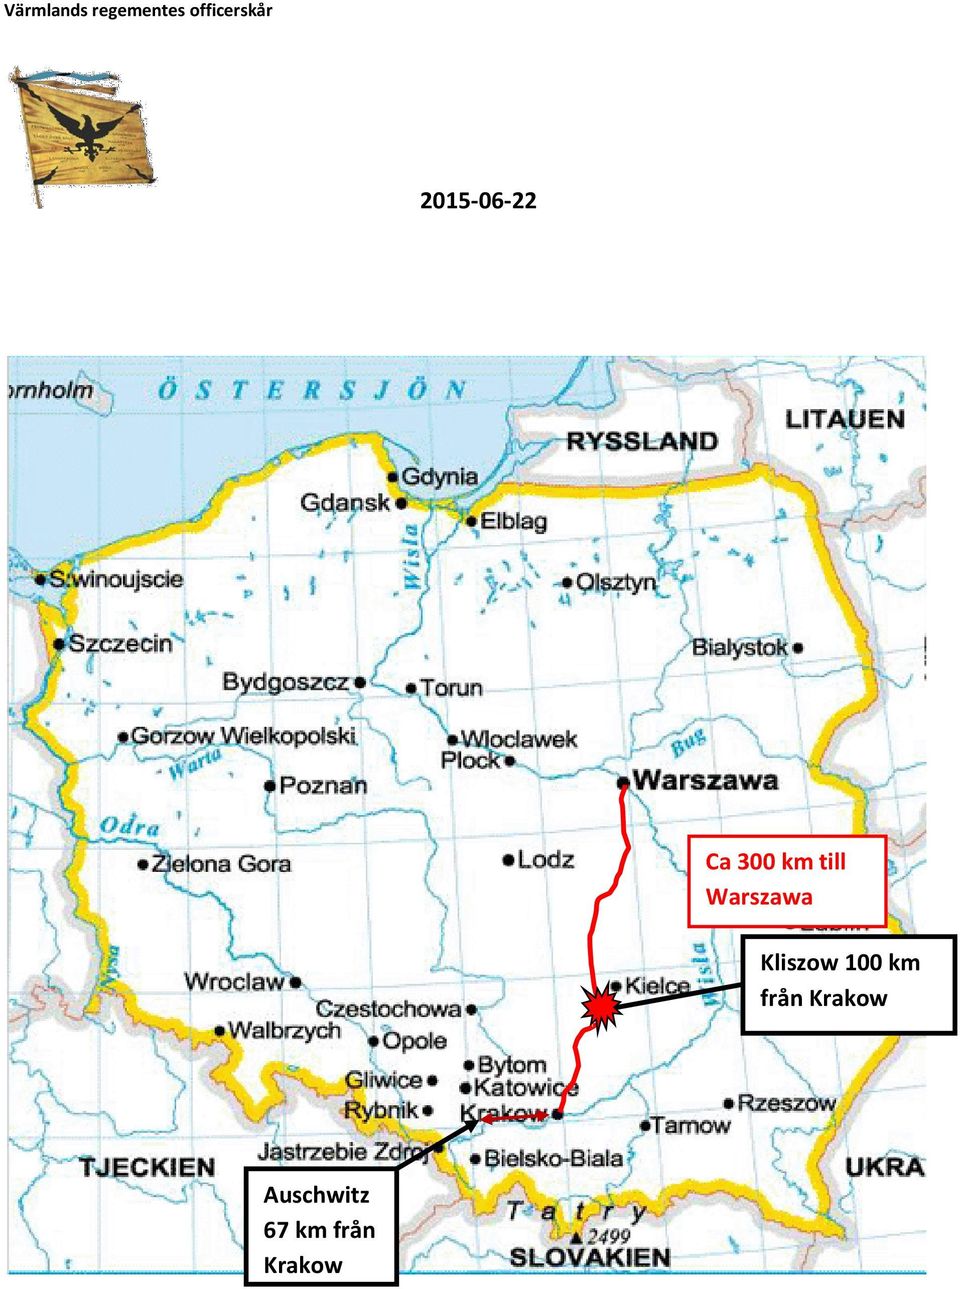 Krakow Auschwitz 67 km